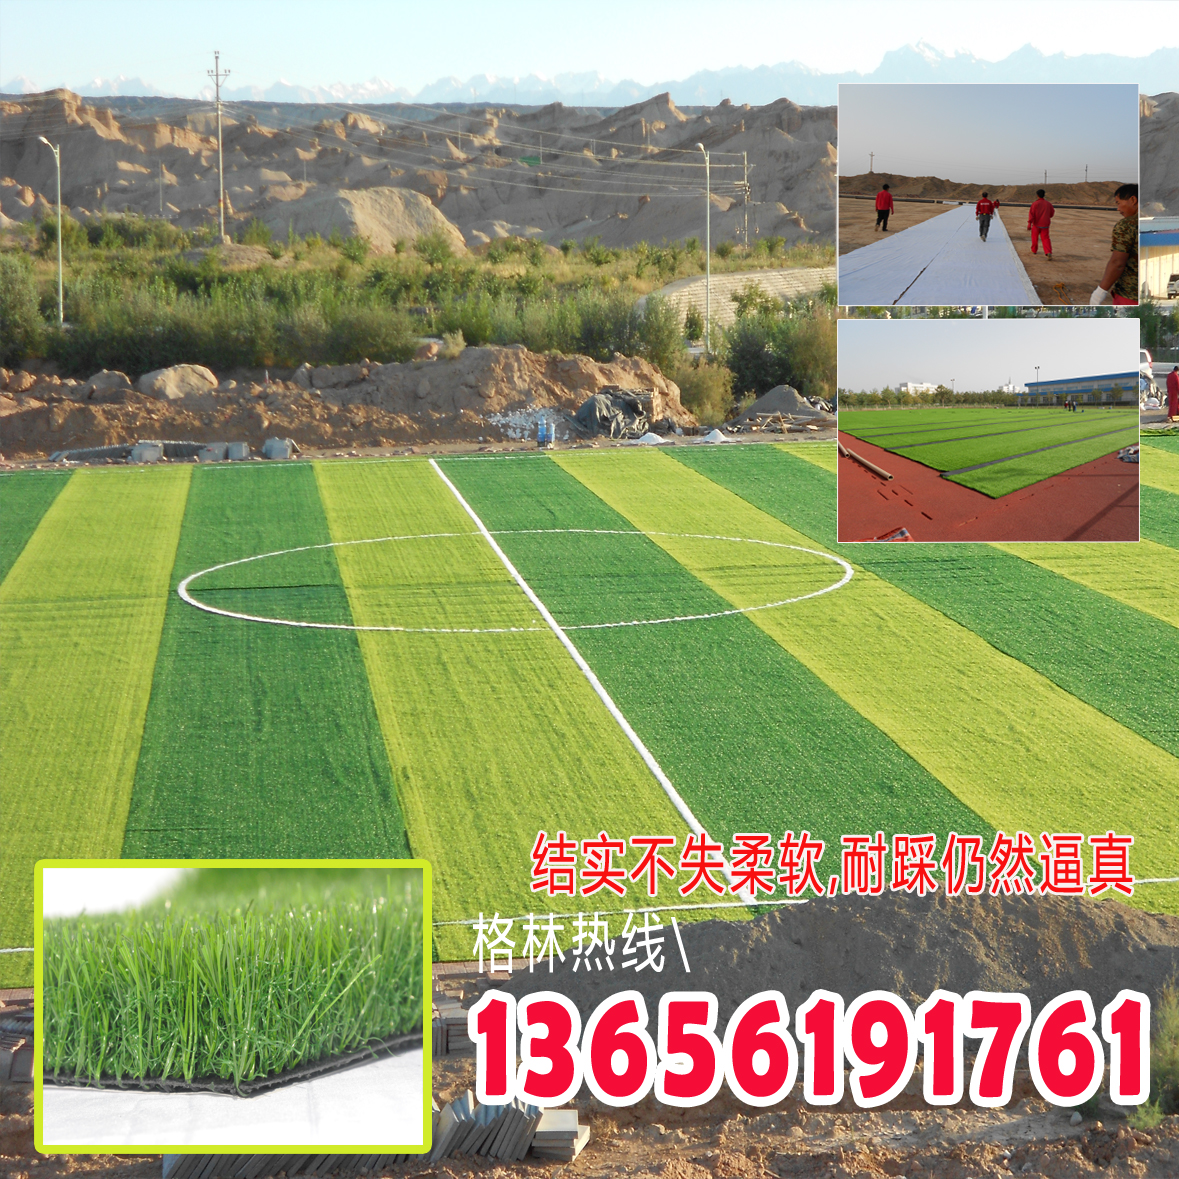 上海 人造草坪足球场草坪 人工草坪 厂家直销人造草坪